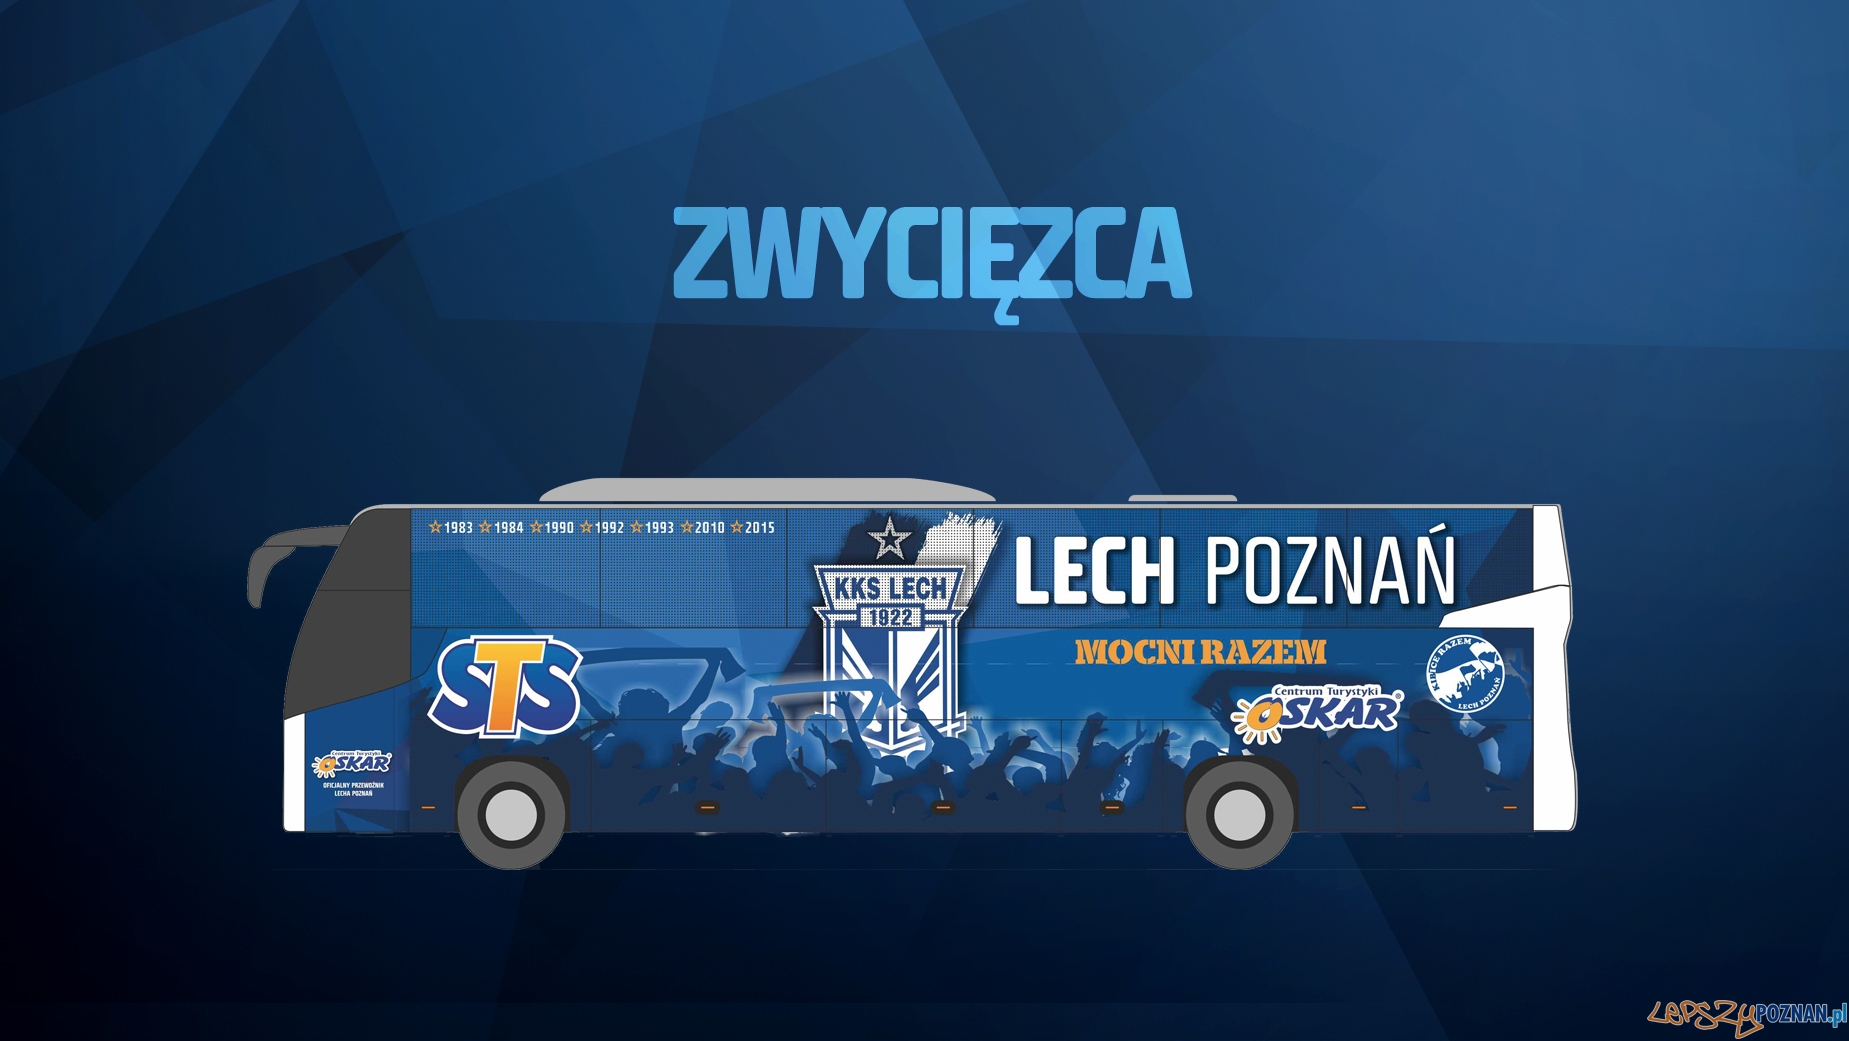 Lech poznań - okleina autokaru  Foto: Lech Poznań / lechpoznan.pl